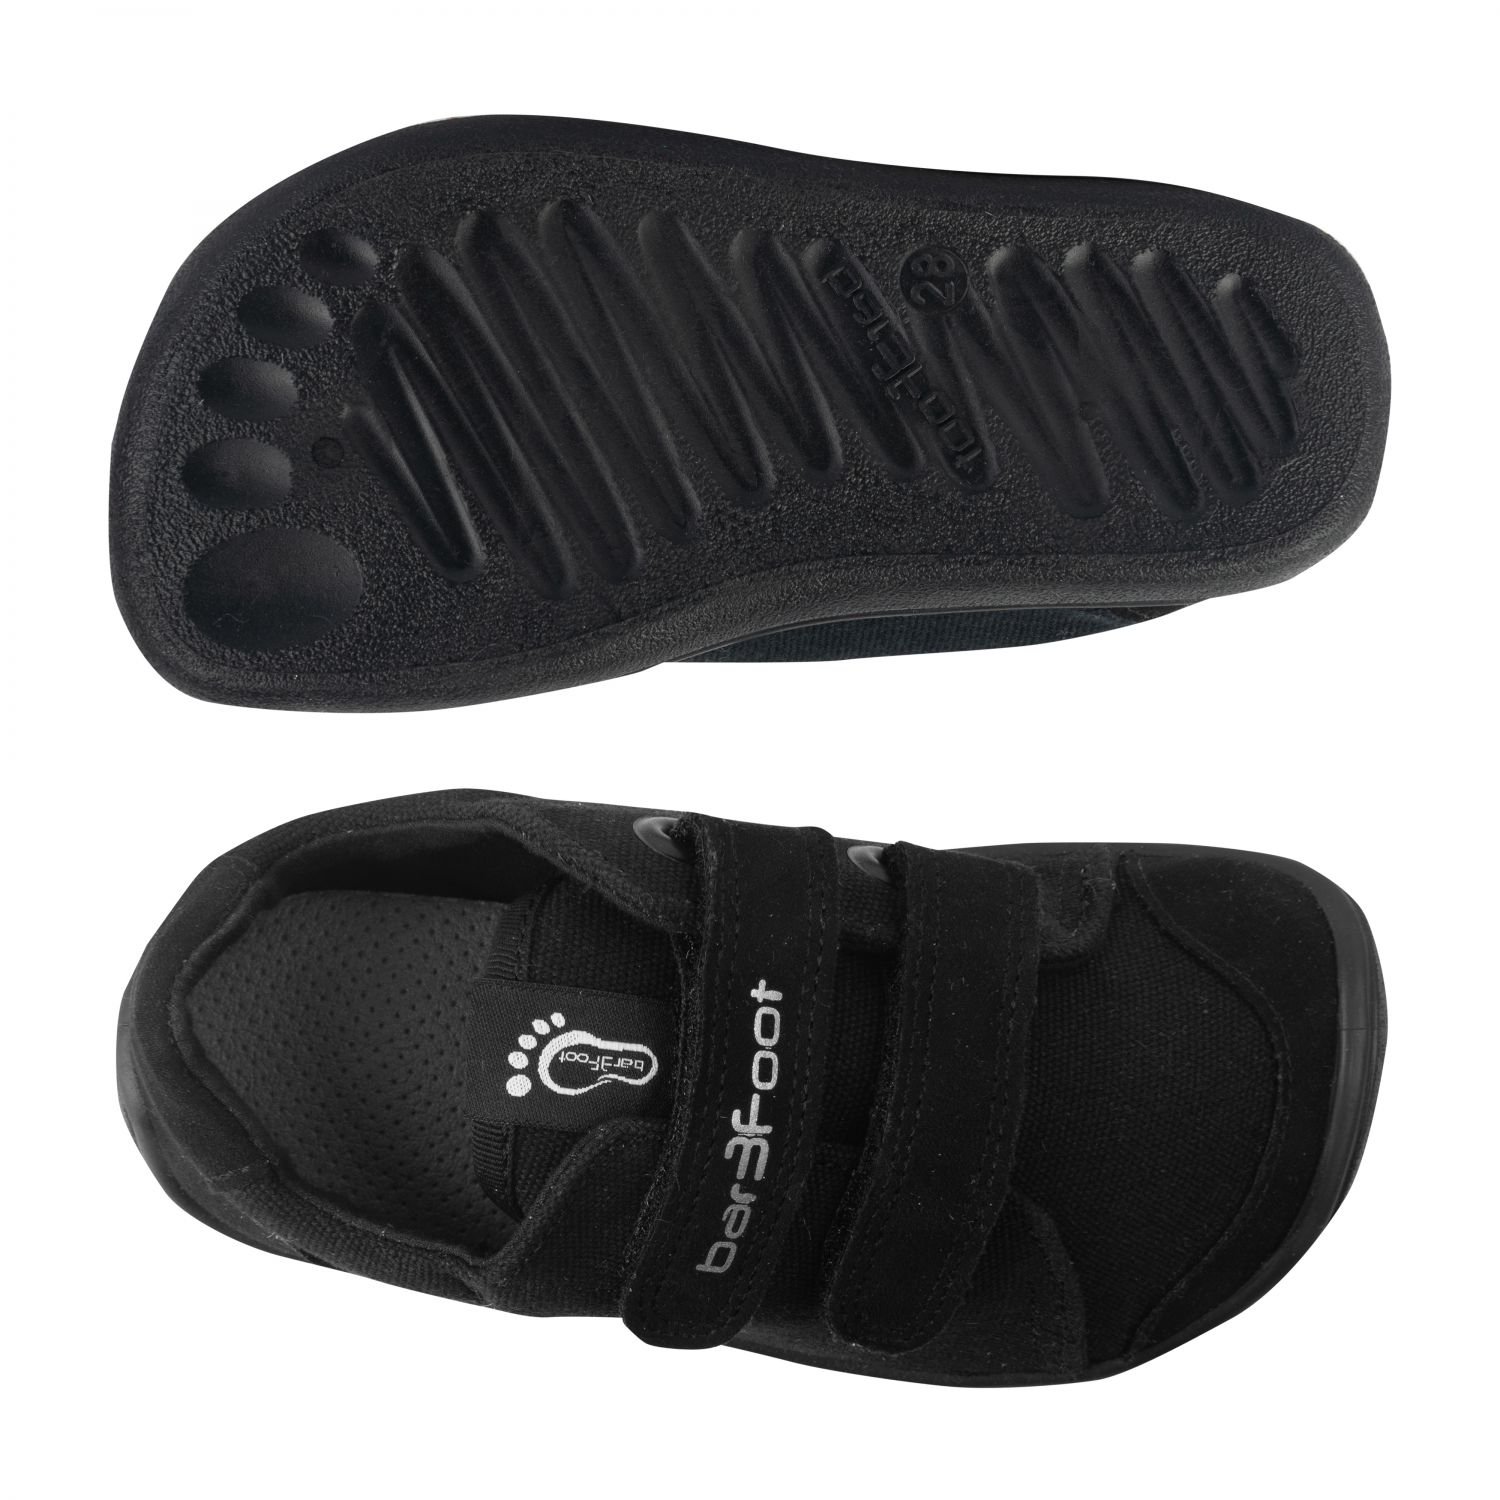 3F Bar3foot tekstiilist tossud- Navy Blue Laste barefoot jalatsid - HellyK - Kvaliteetsed lasteriided, villariided, barefoot jalatsid